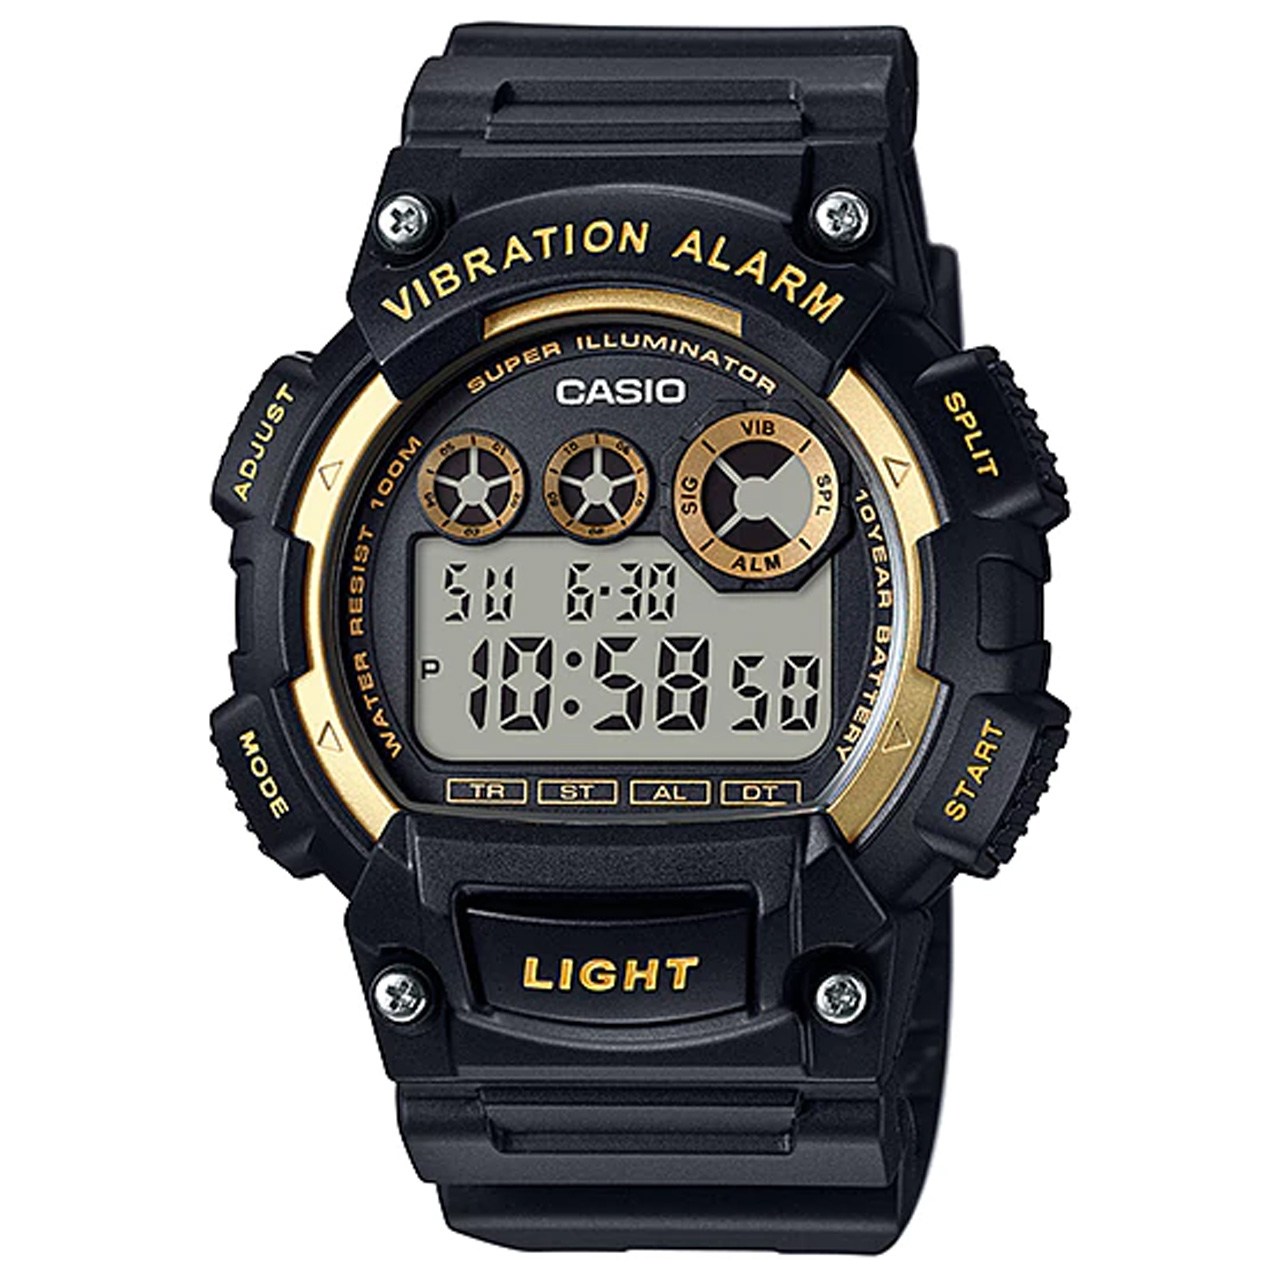 ساعت مچی دیجیتالی مردانه کاسیو مدل W-735H-1A2VDF